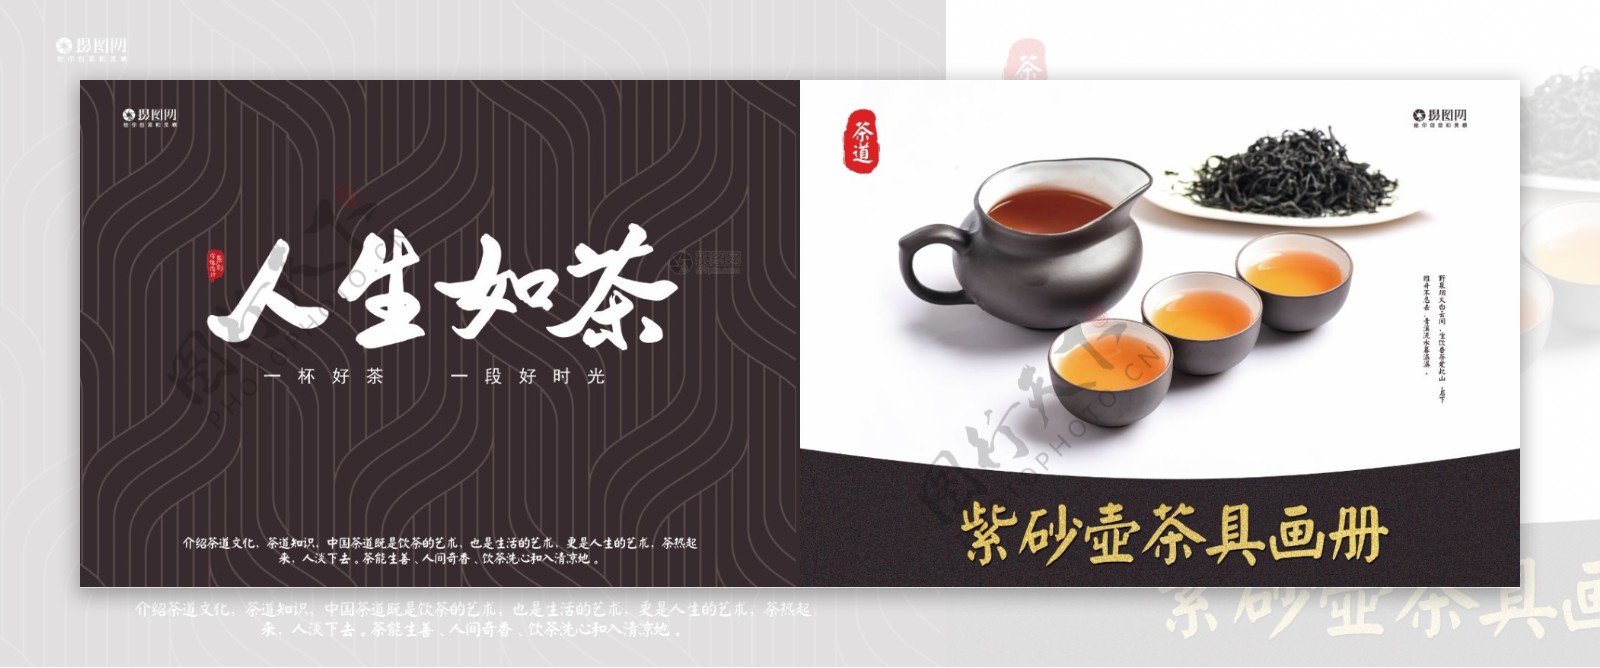 紫砂壶茶具画册封面